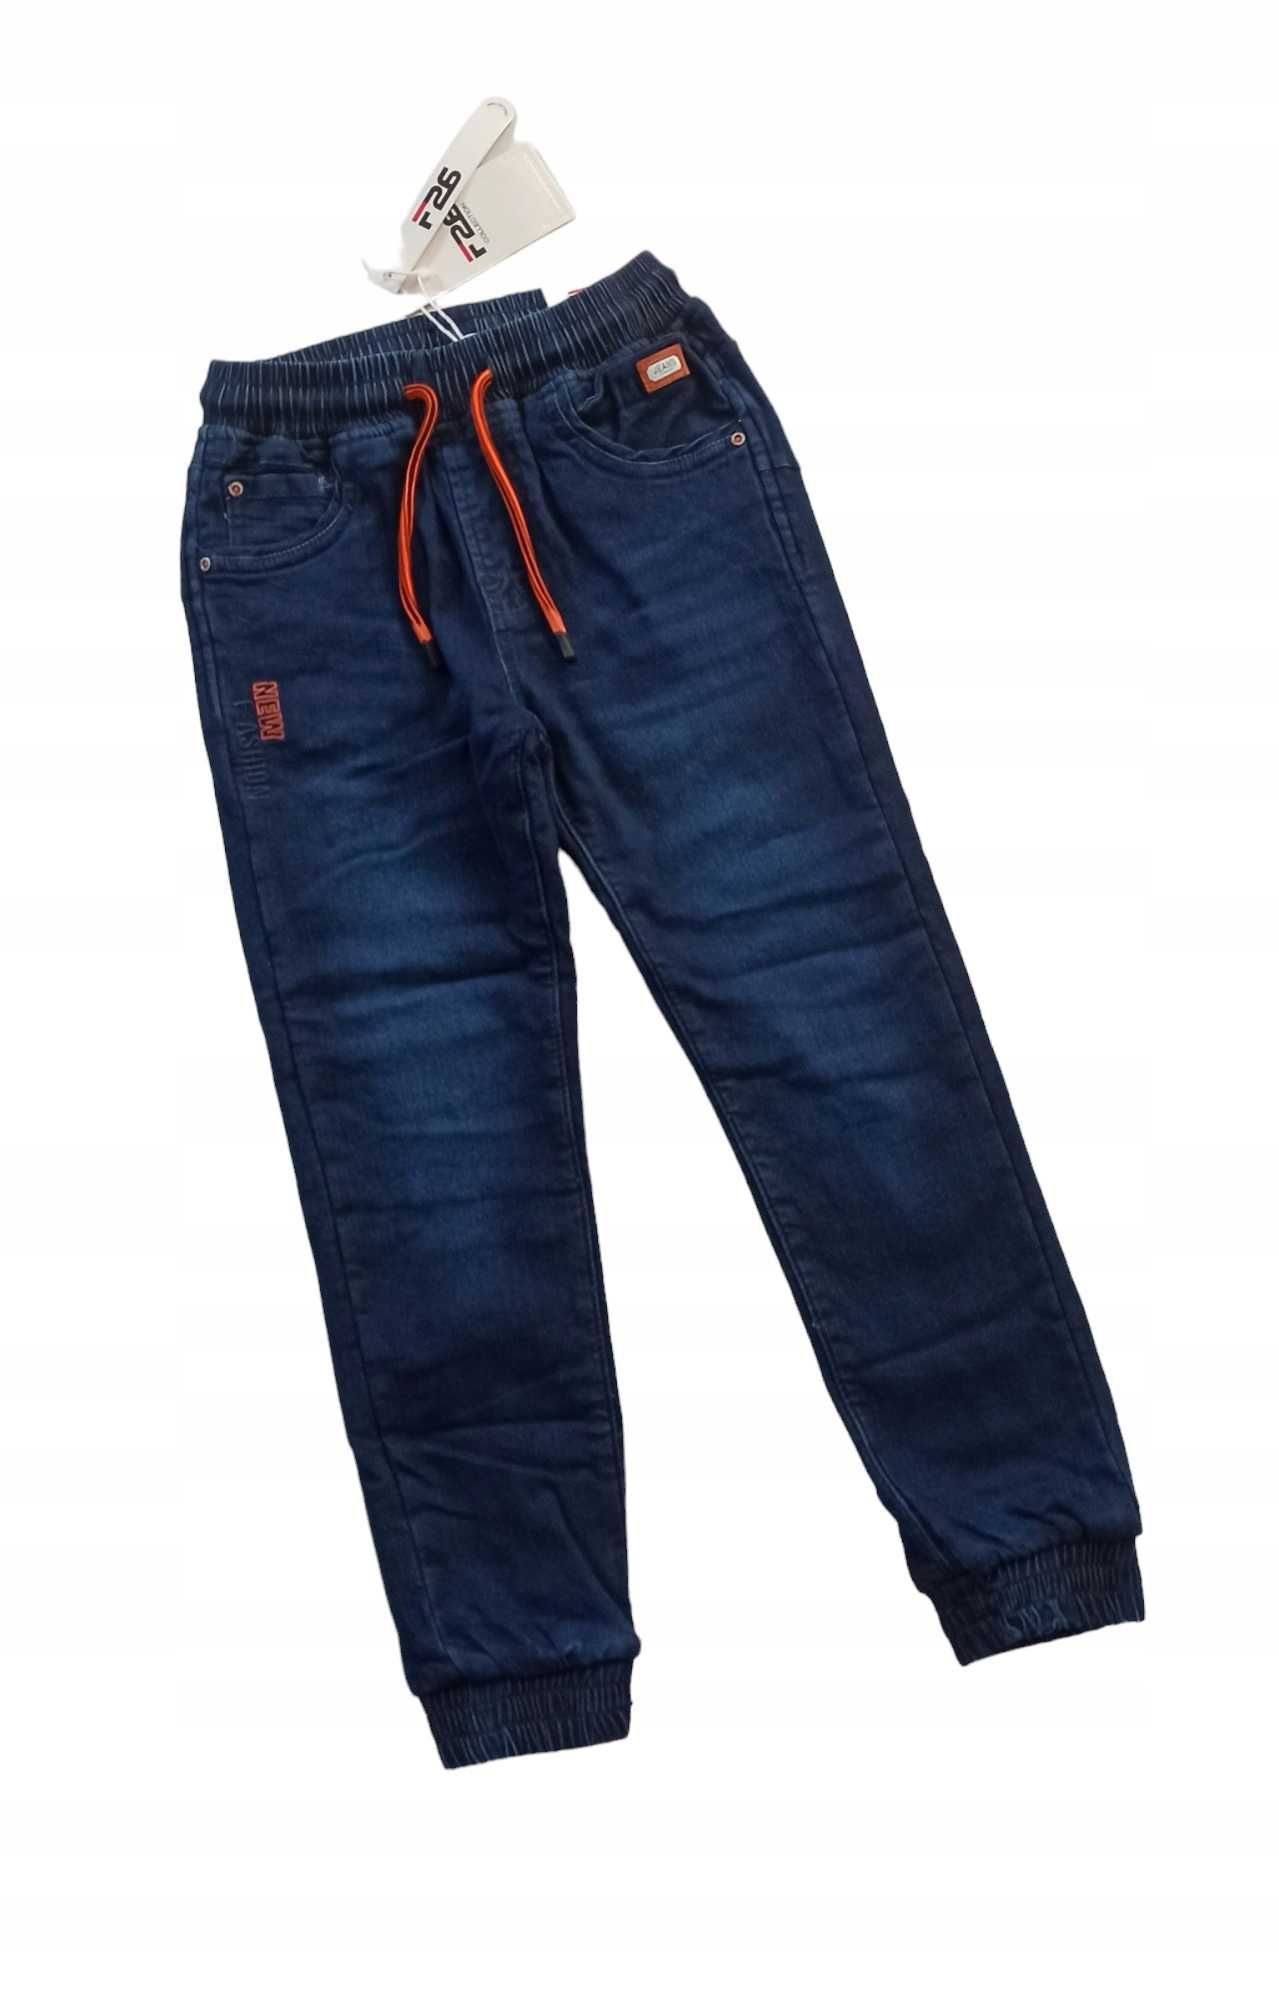 Spodnie Jeans miękkie elastyczne GUMA ocieplane polarem nowy r 122-128